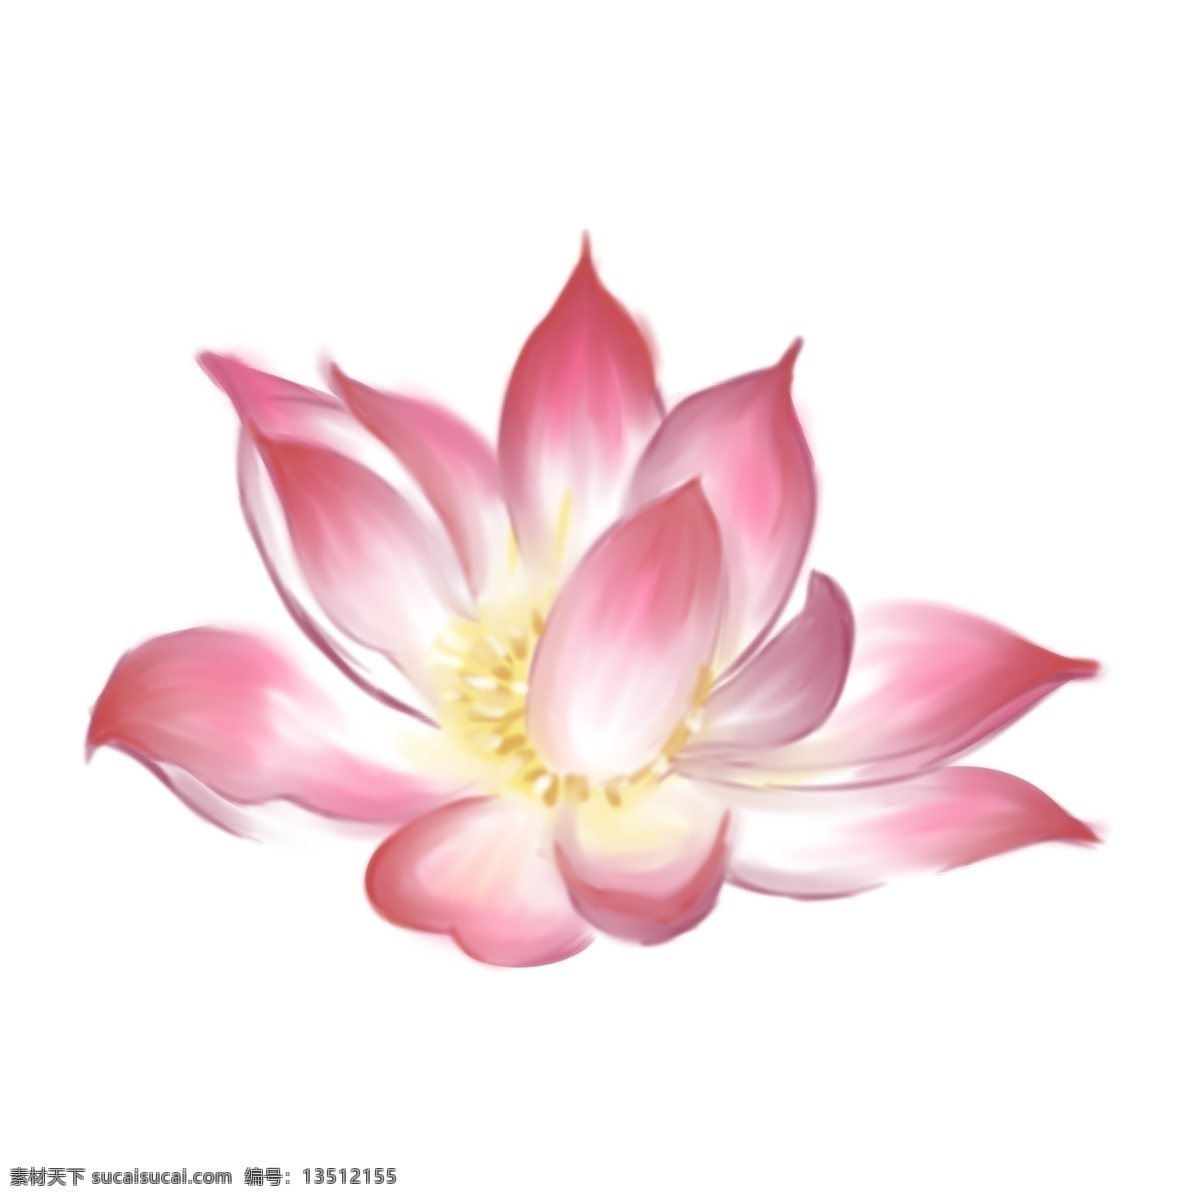 荷花 花卉 手绘 透明 淡粉色 鲜花 装饰图案 免扣素材 透明素材